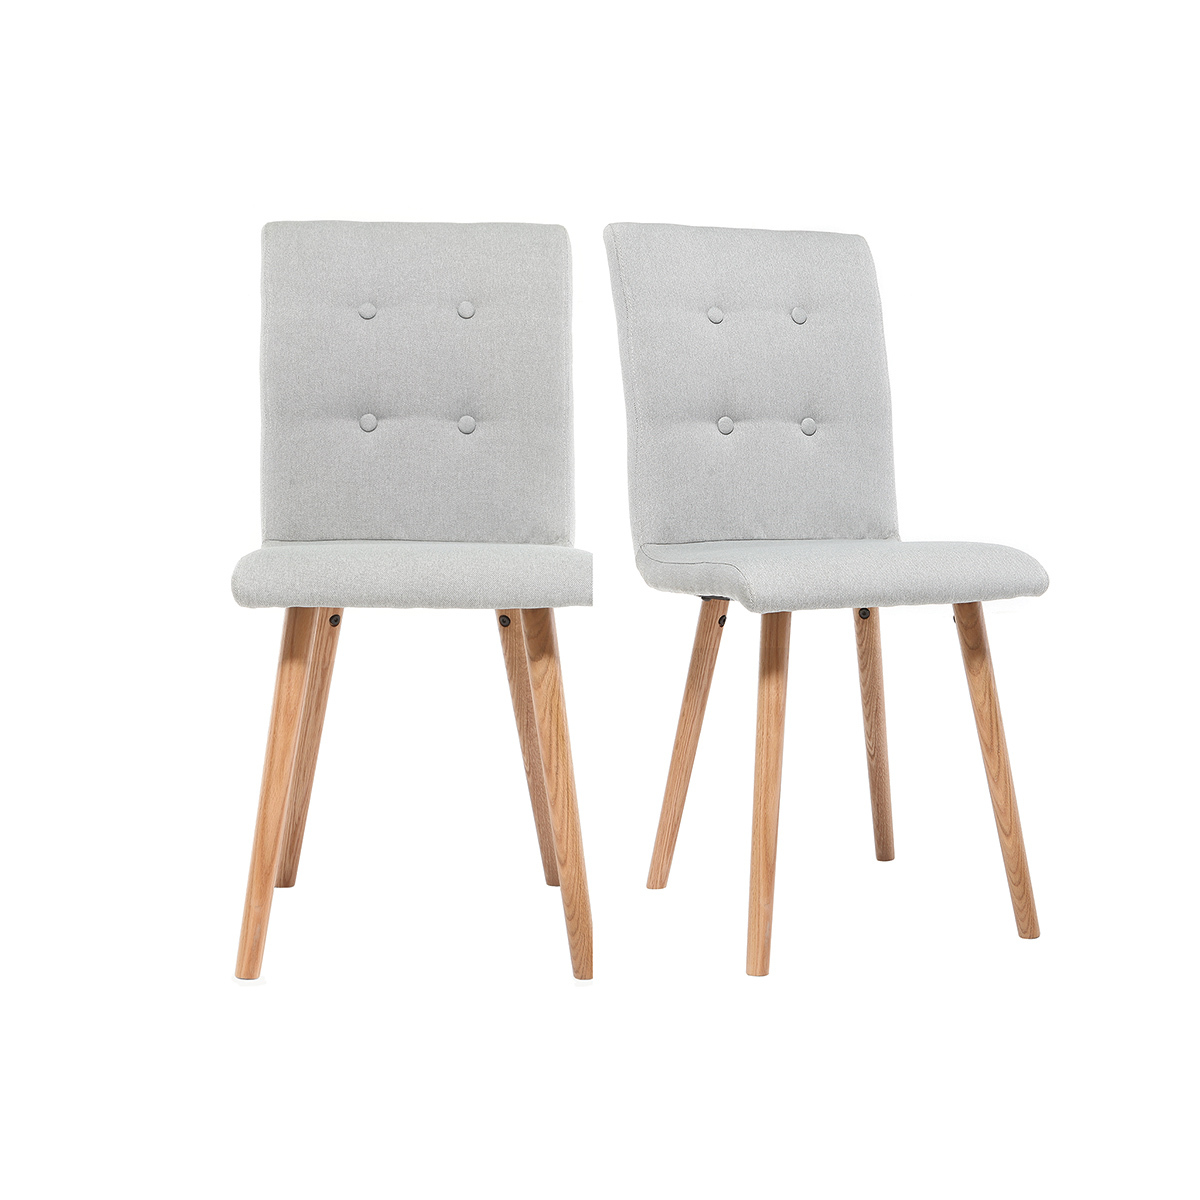 Chaise design en tissu gris clair et bois clair massif (lot de 2) HORTA vue1